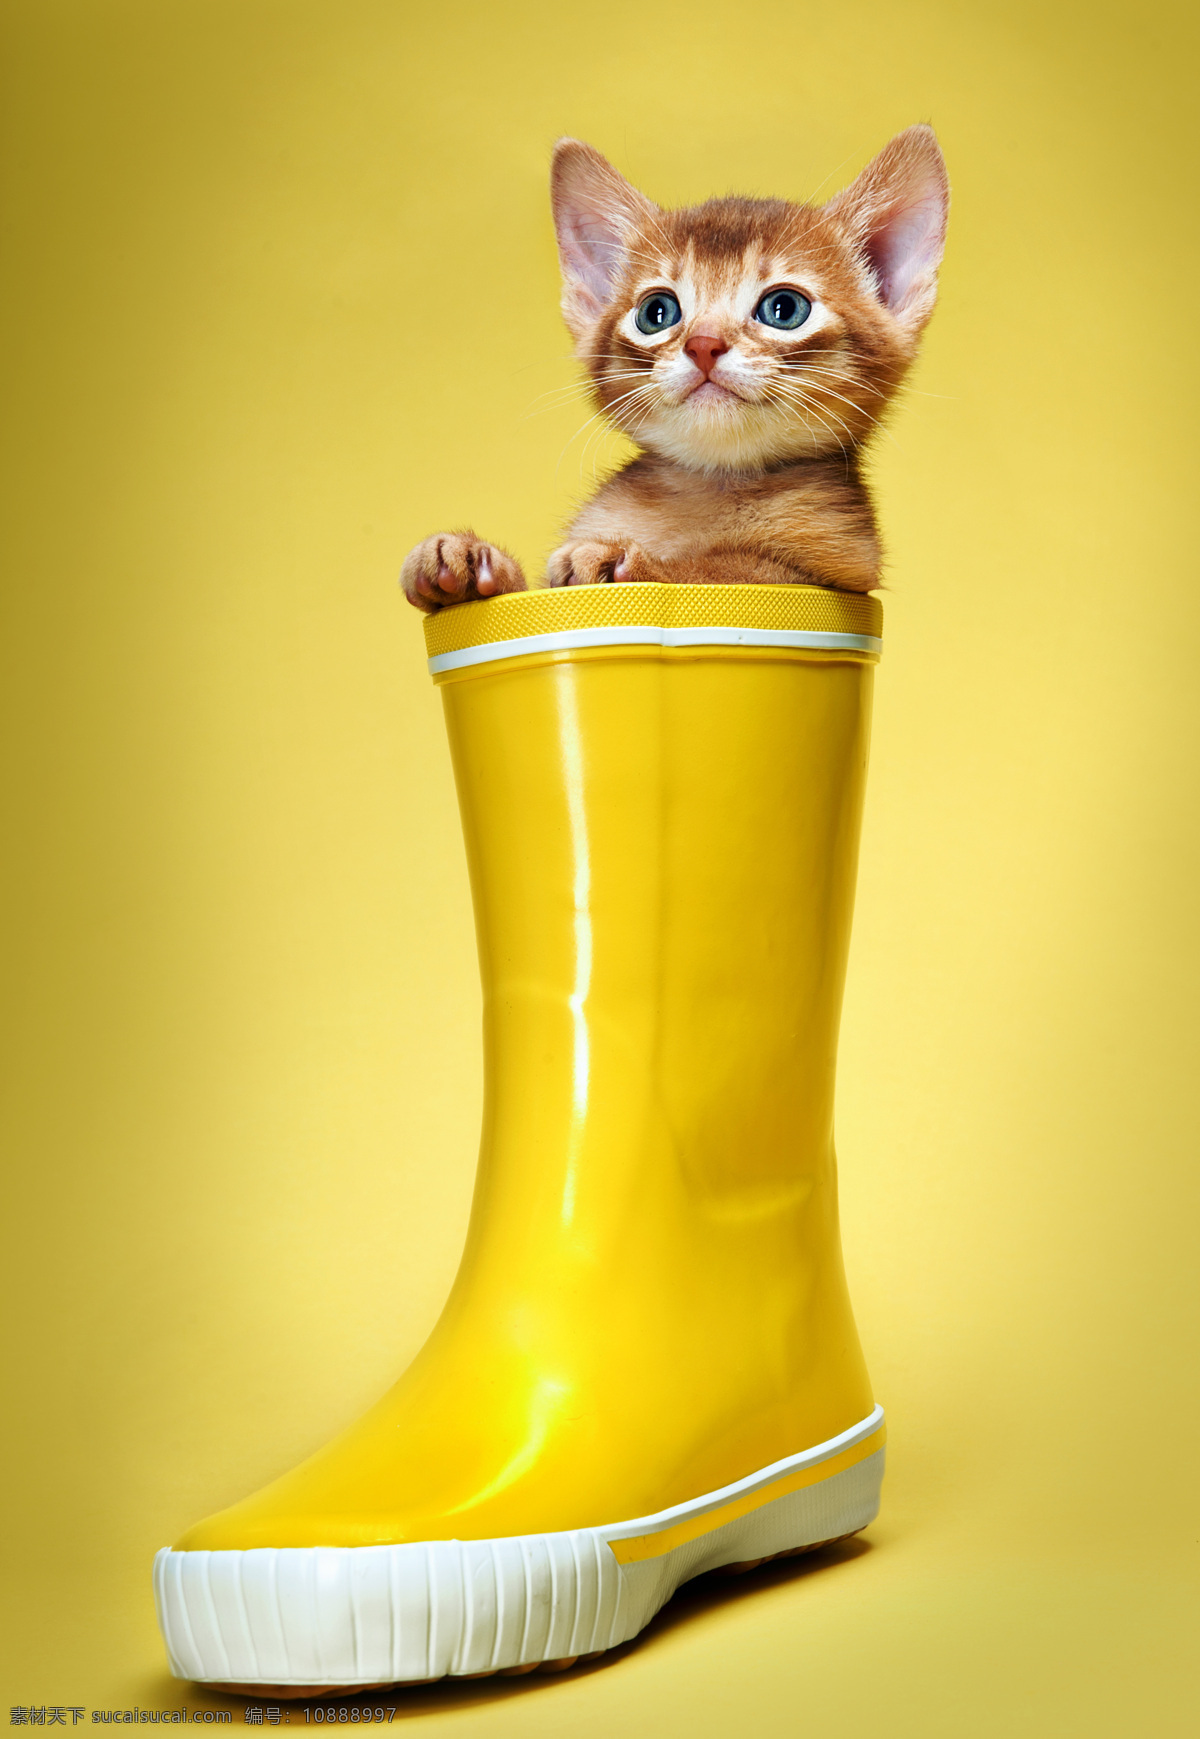 雨靴的小猫 雨靴里的小猫 猫咪 小猫 宠物猫 可爱动物 动物世界 动物摄影 陆地动物 生物世界 黄色